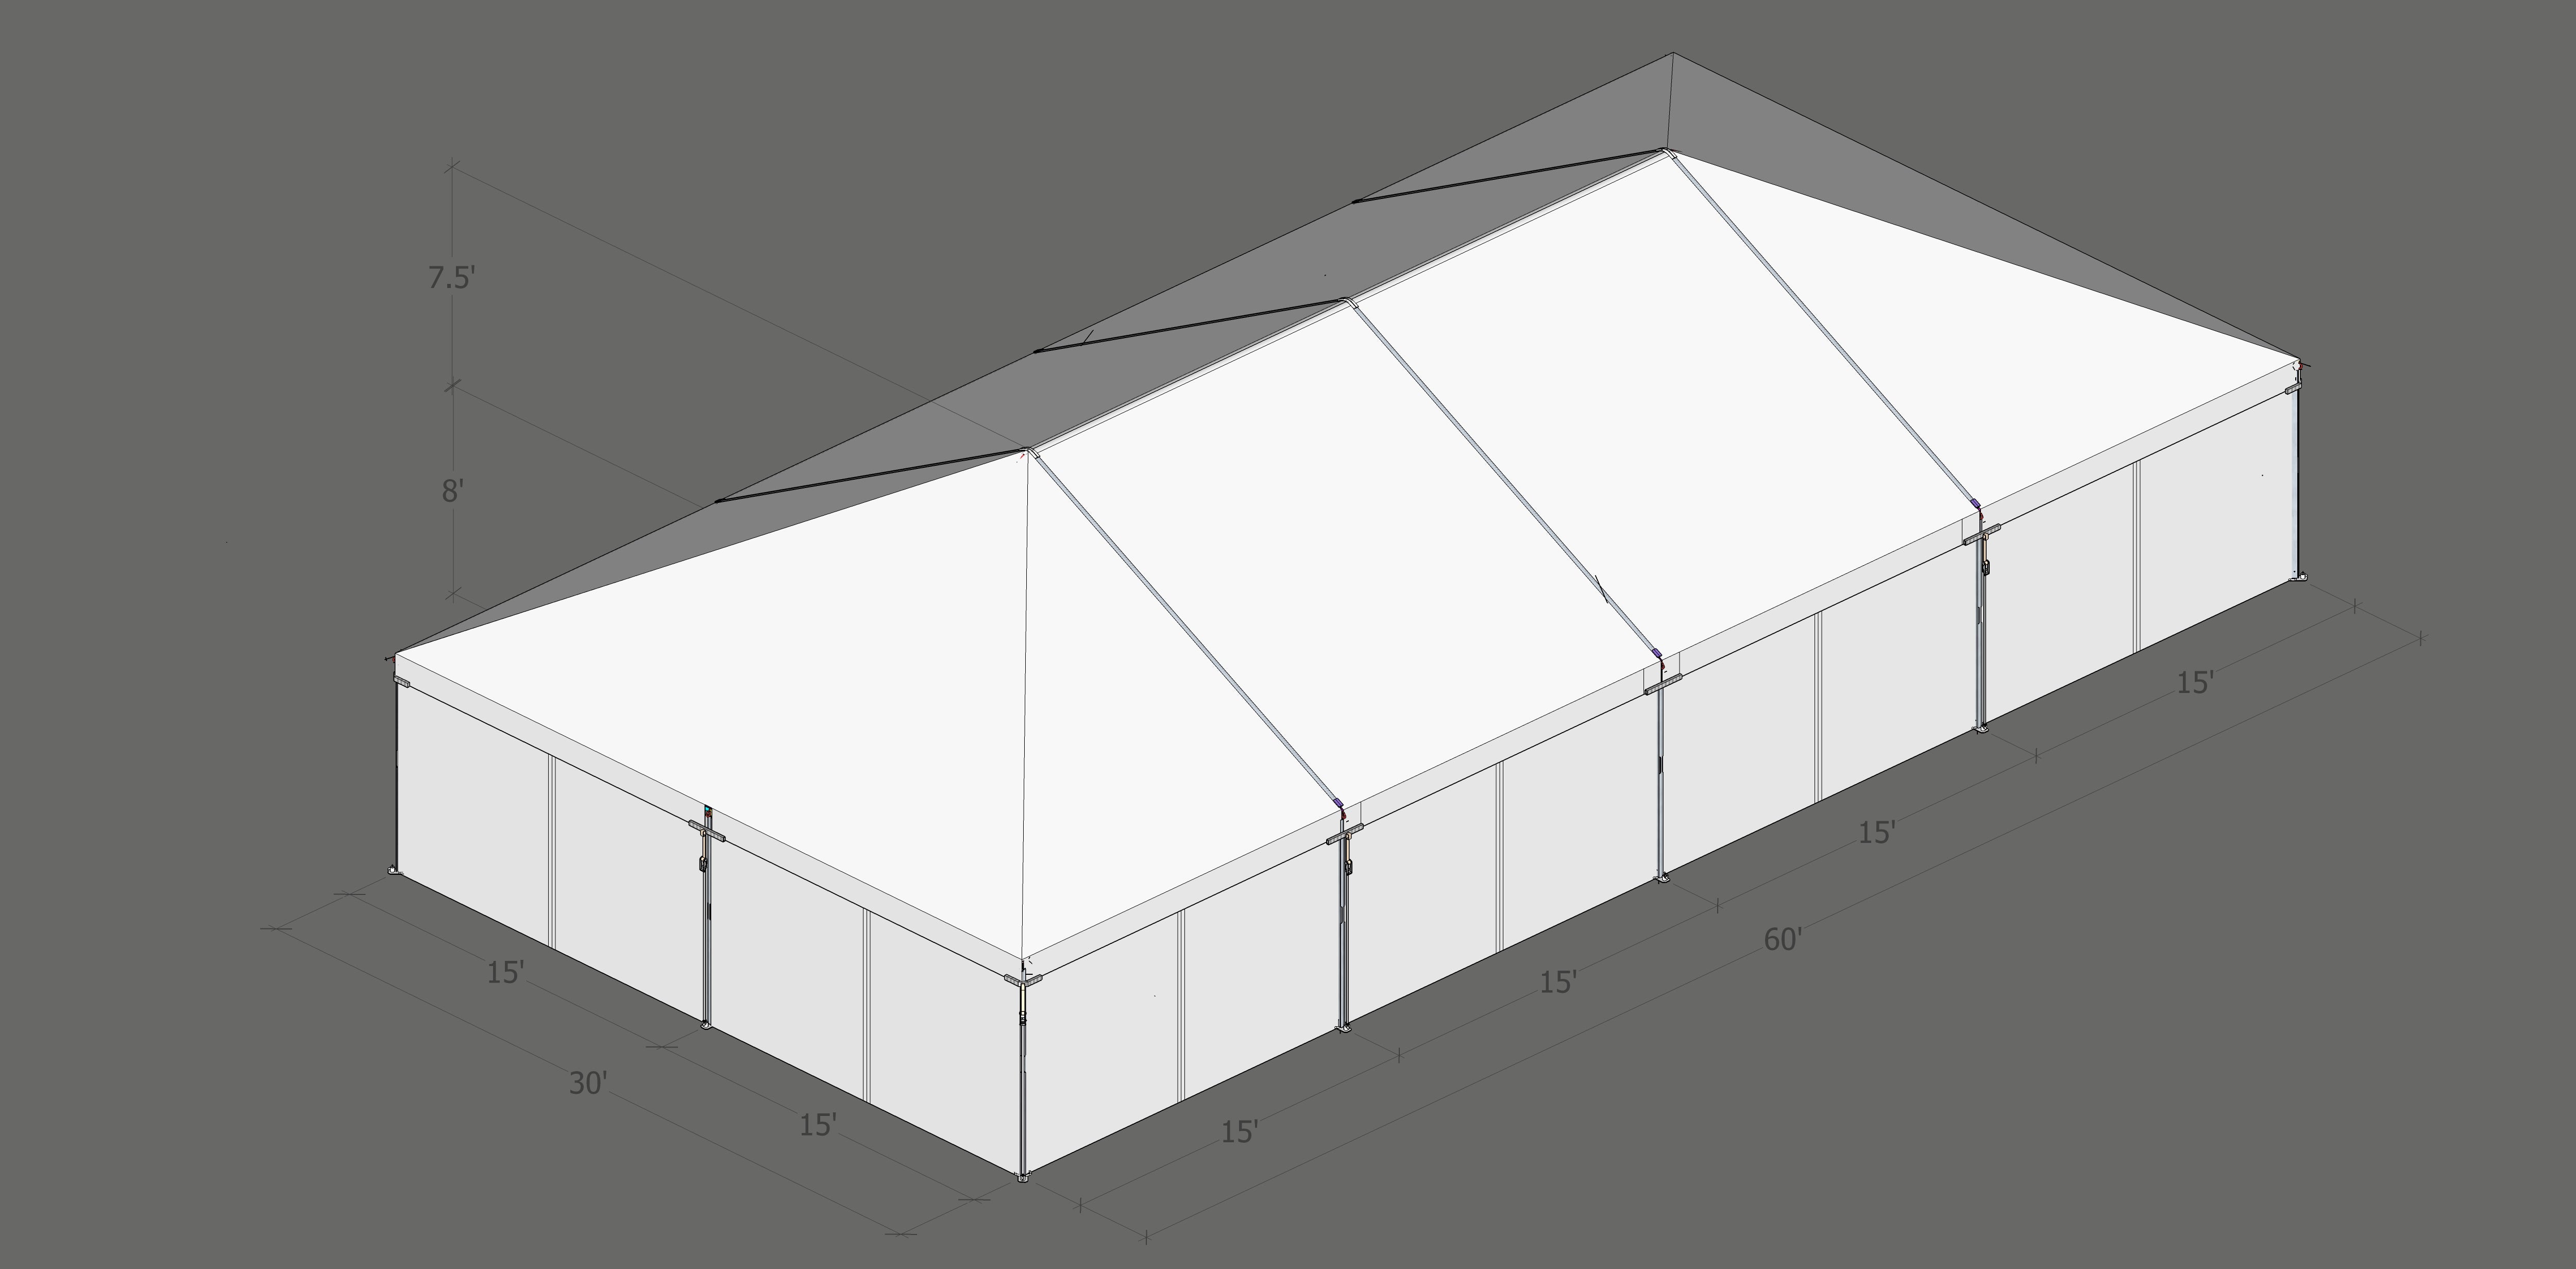 Turbotrack Tent, 30' x 60' Plain Walls